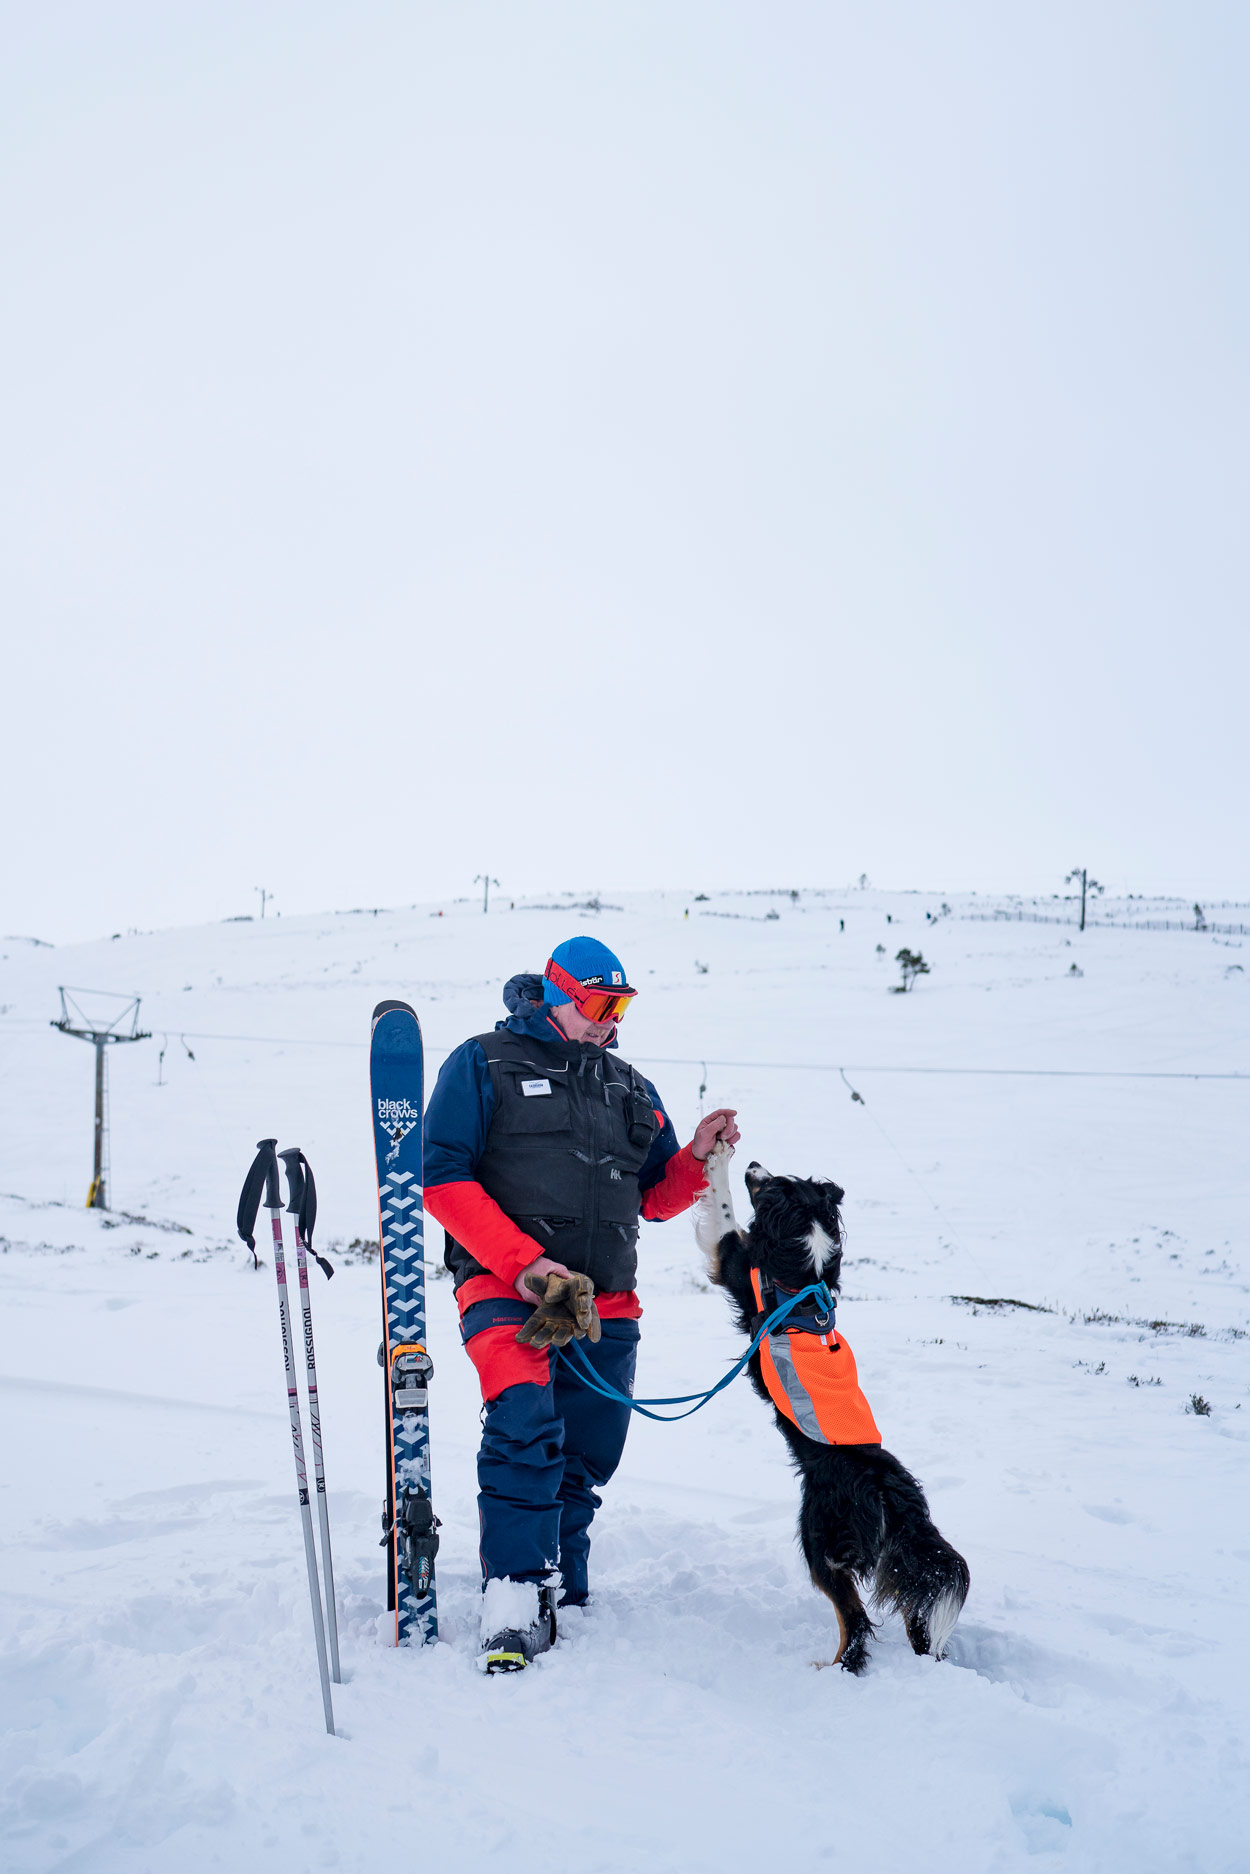 ski-touring-dogs-hannah-bailey-photographs